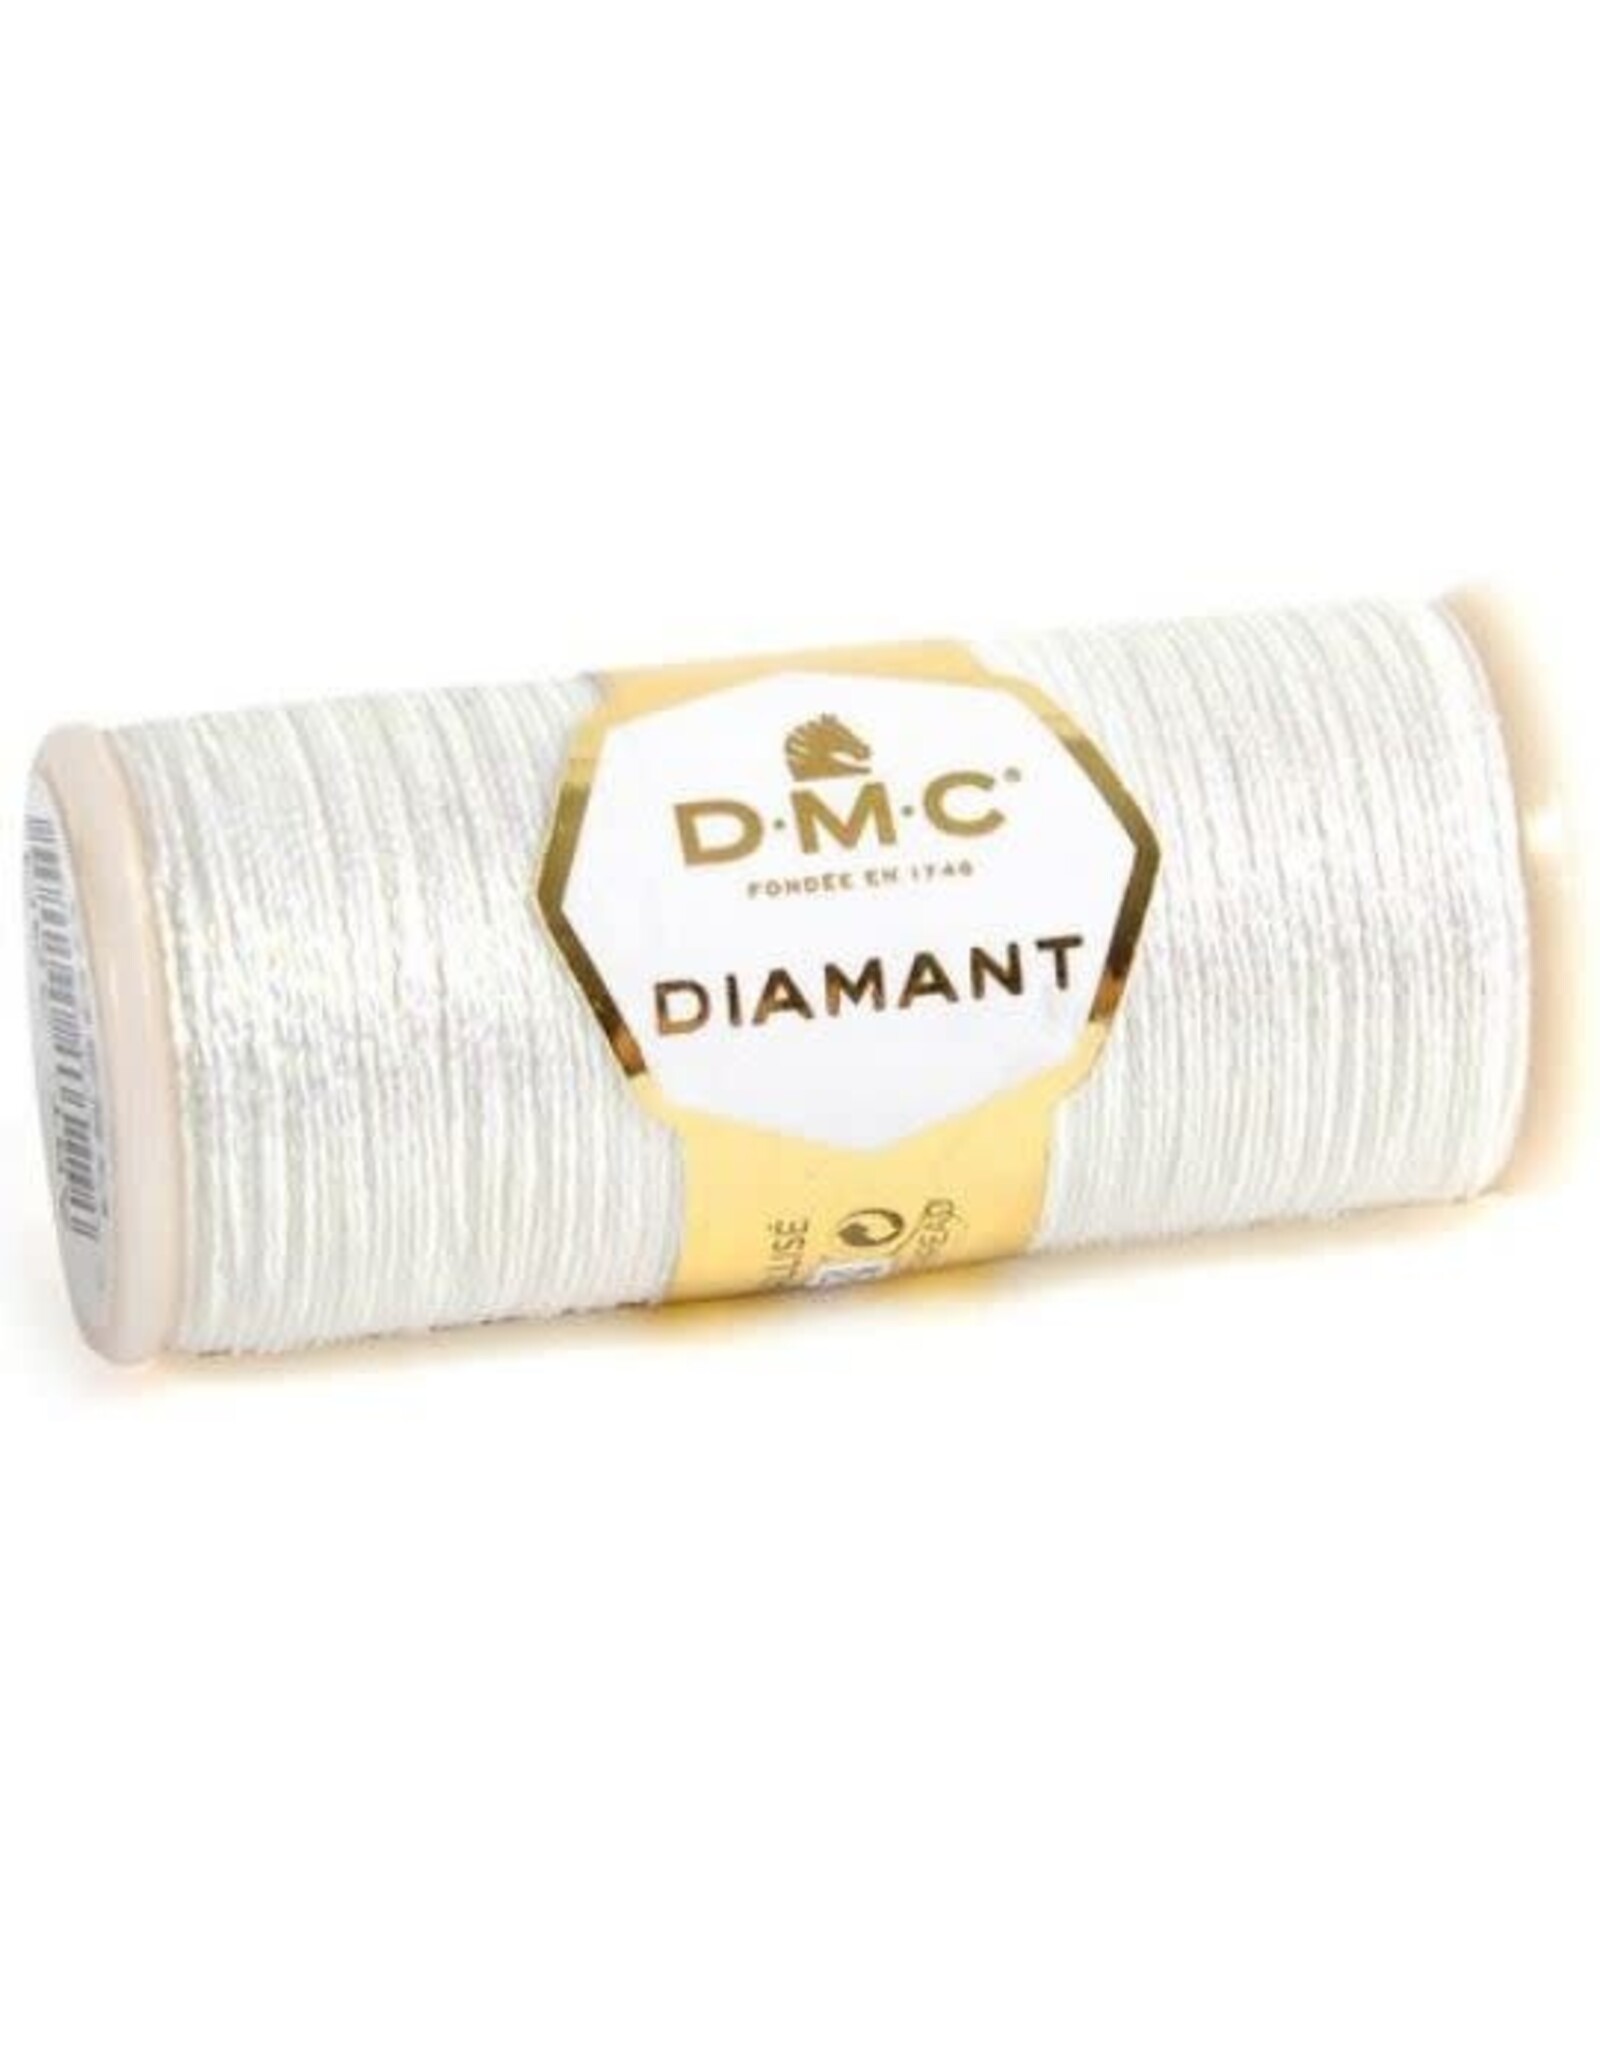 DMC DMC DIAMANT METALLIC THREAD WHITE